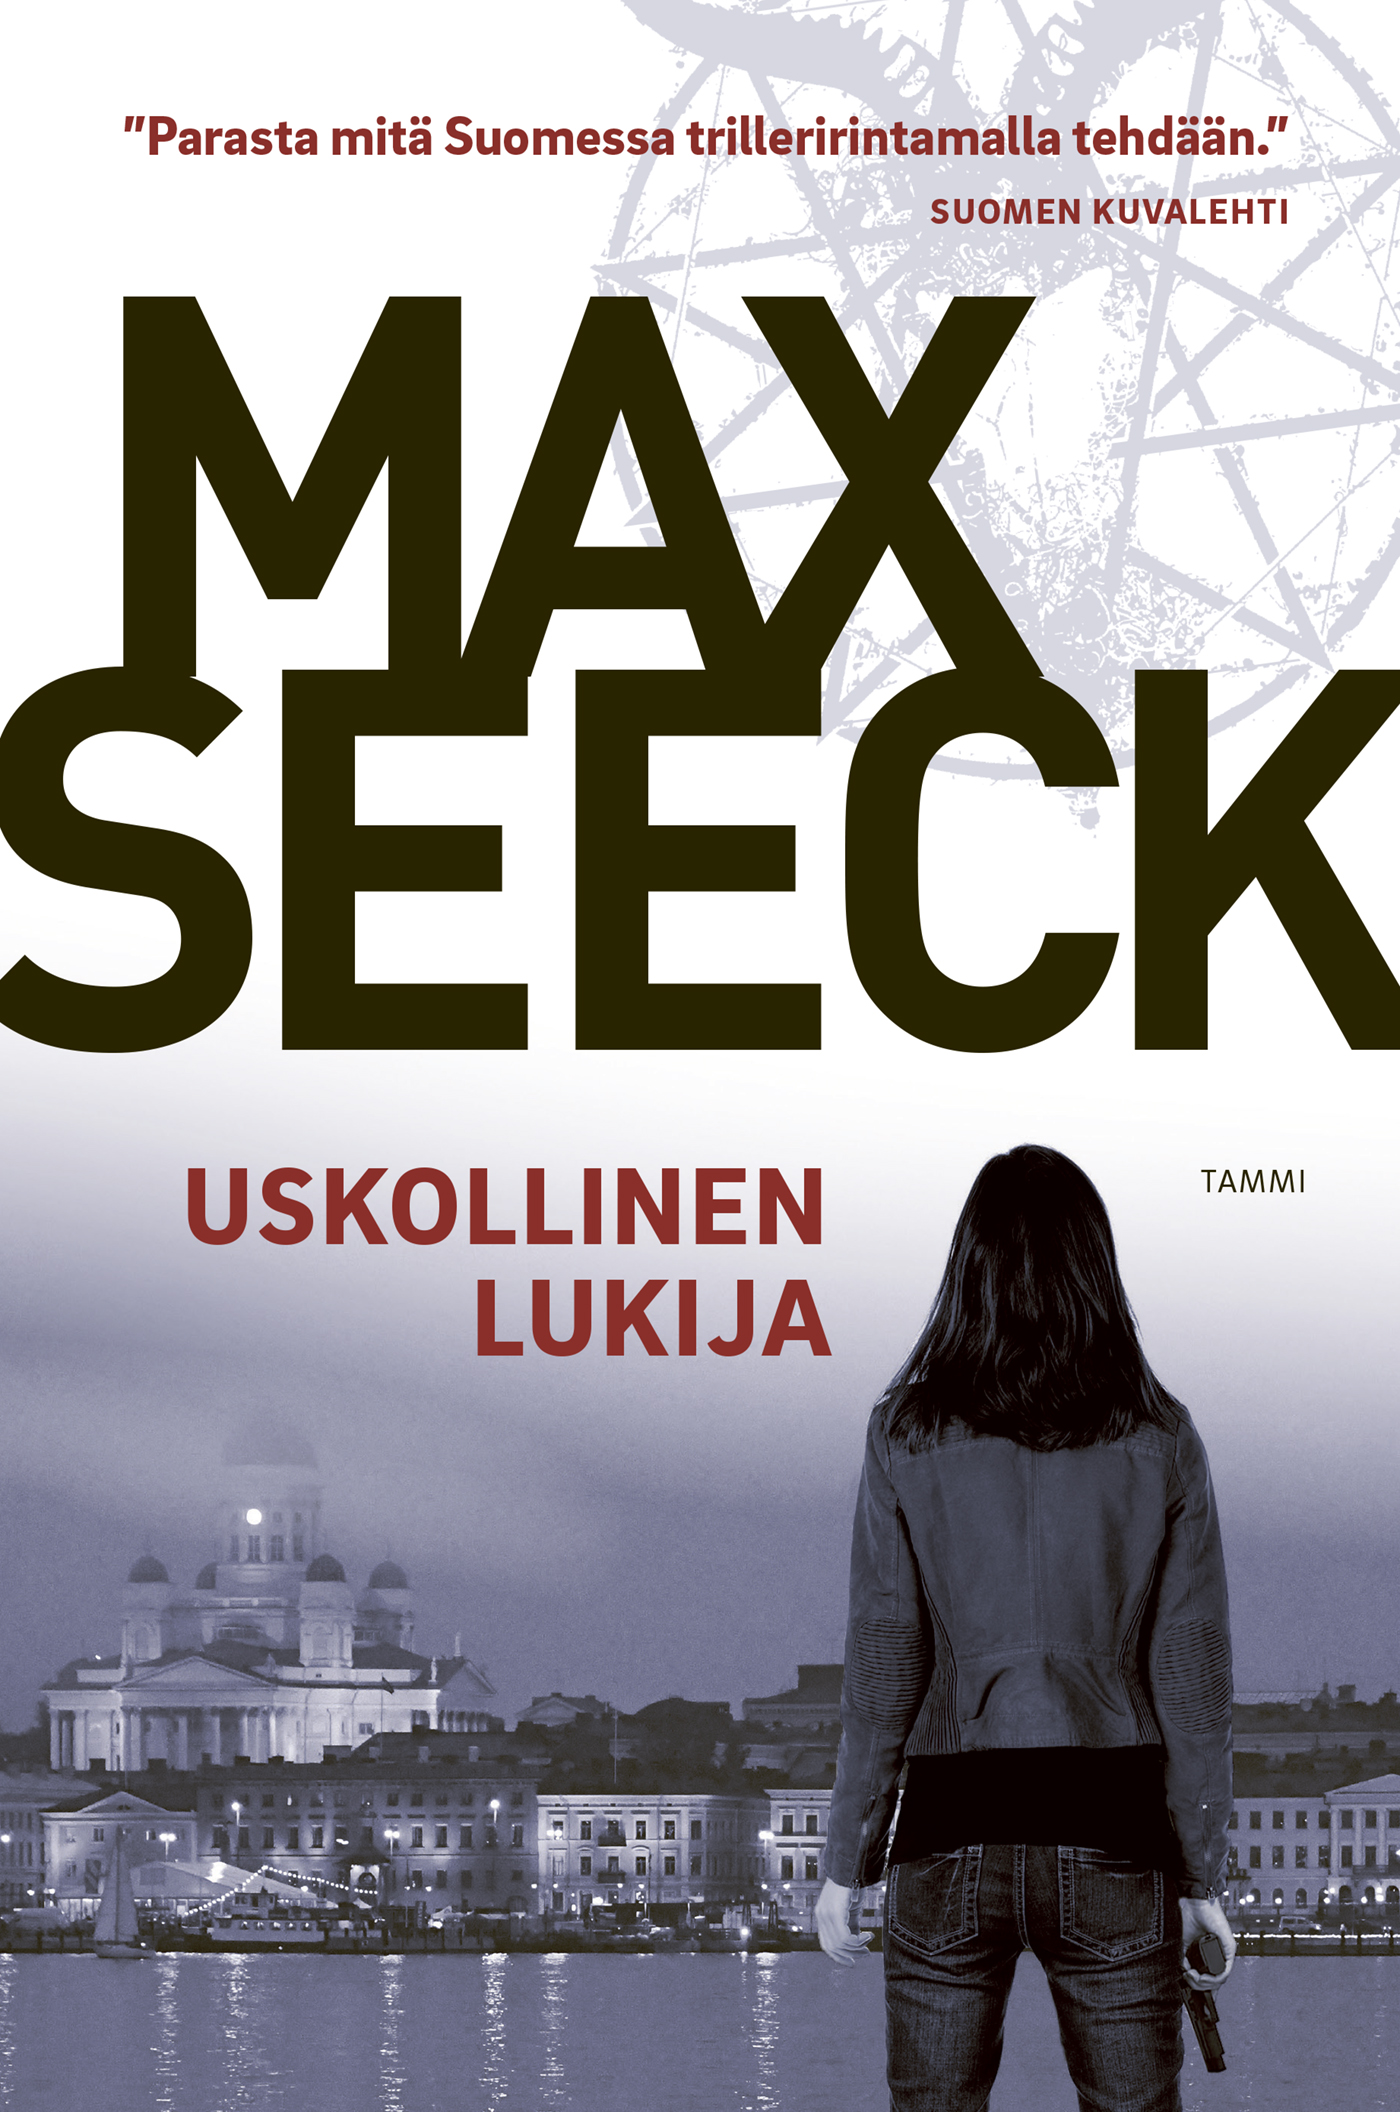 Seeck, Max - Uskollinen lukija, ebook